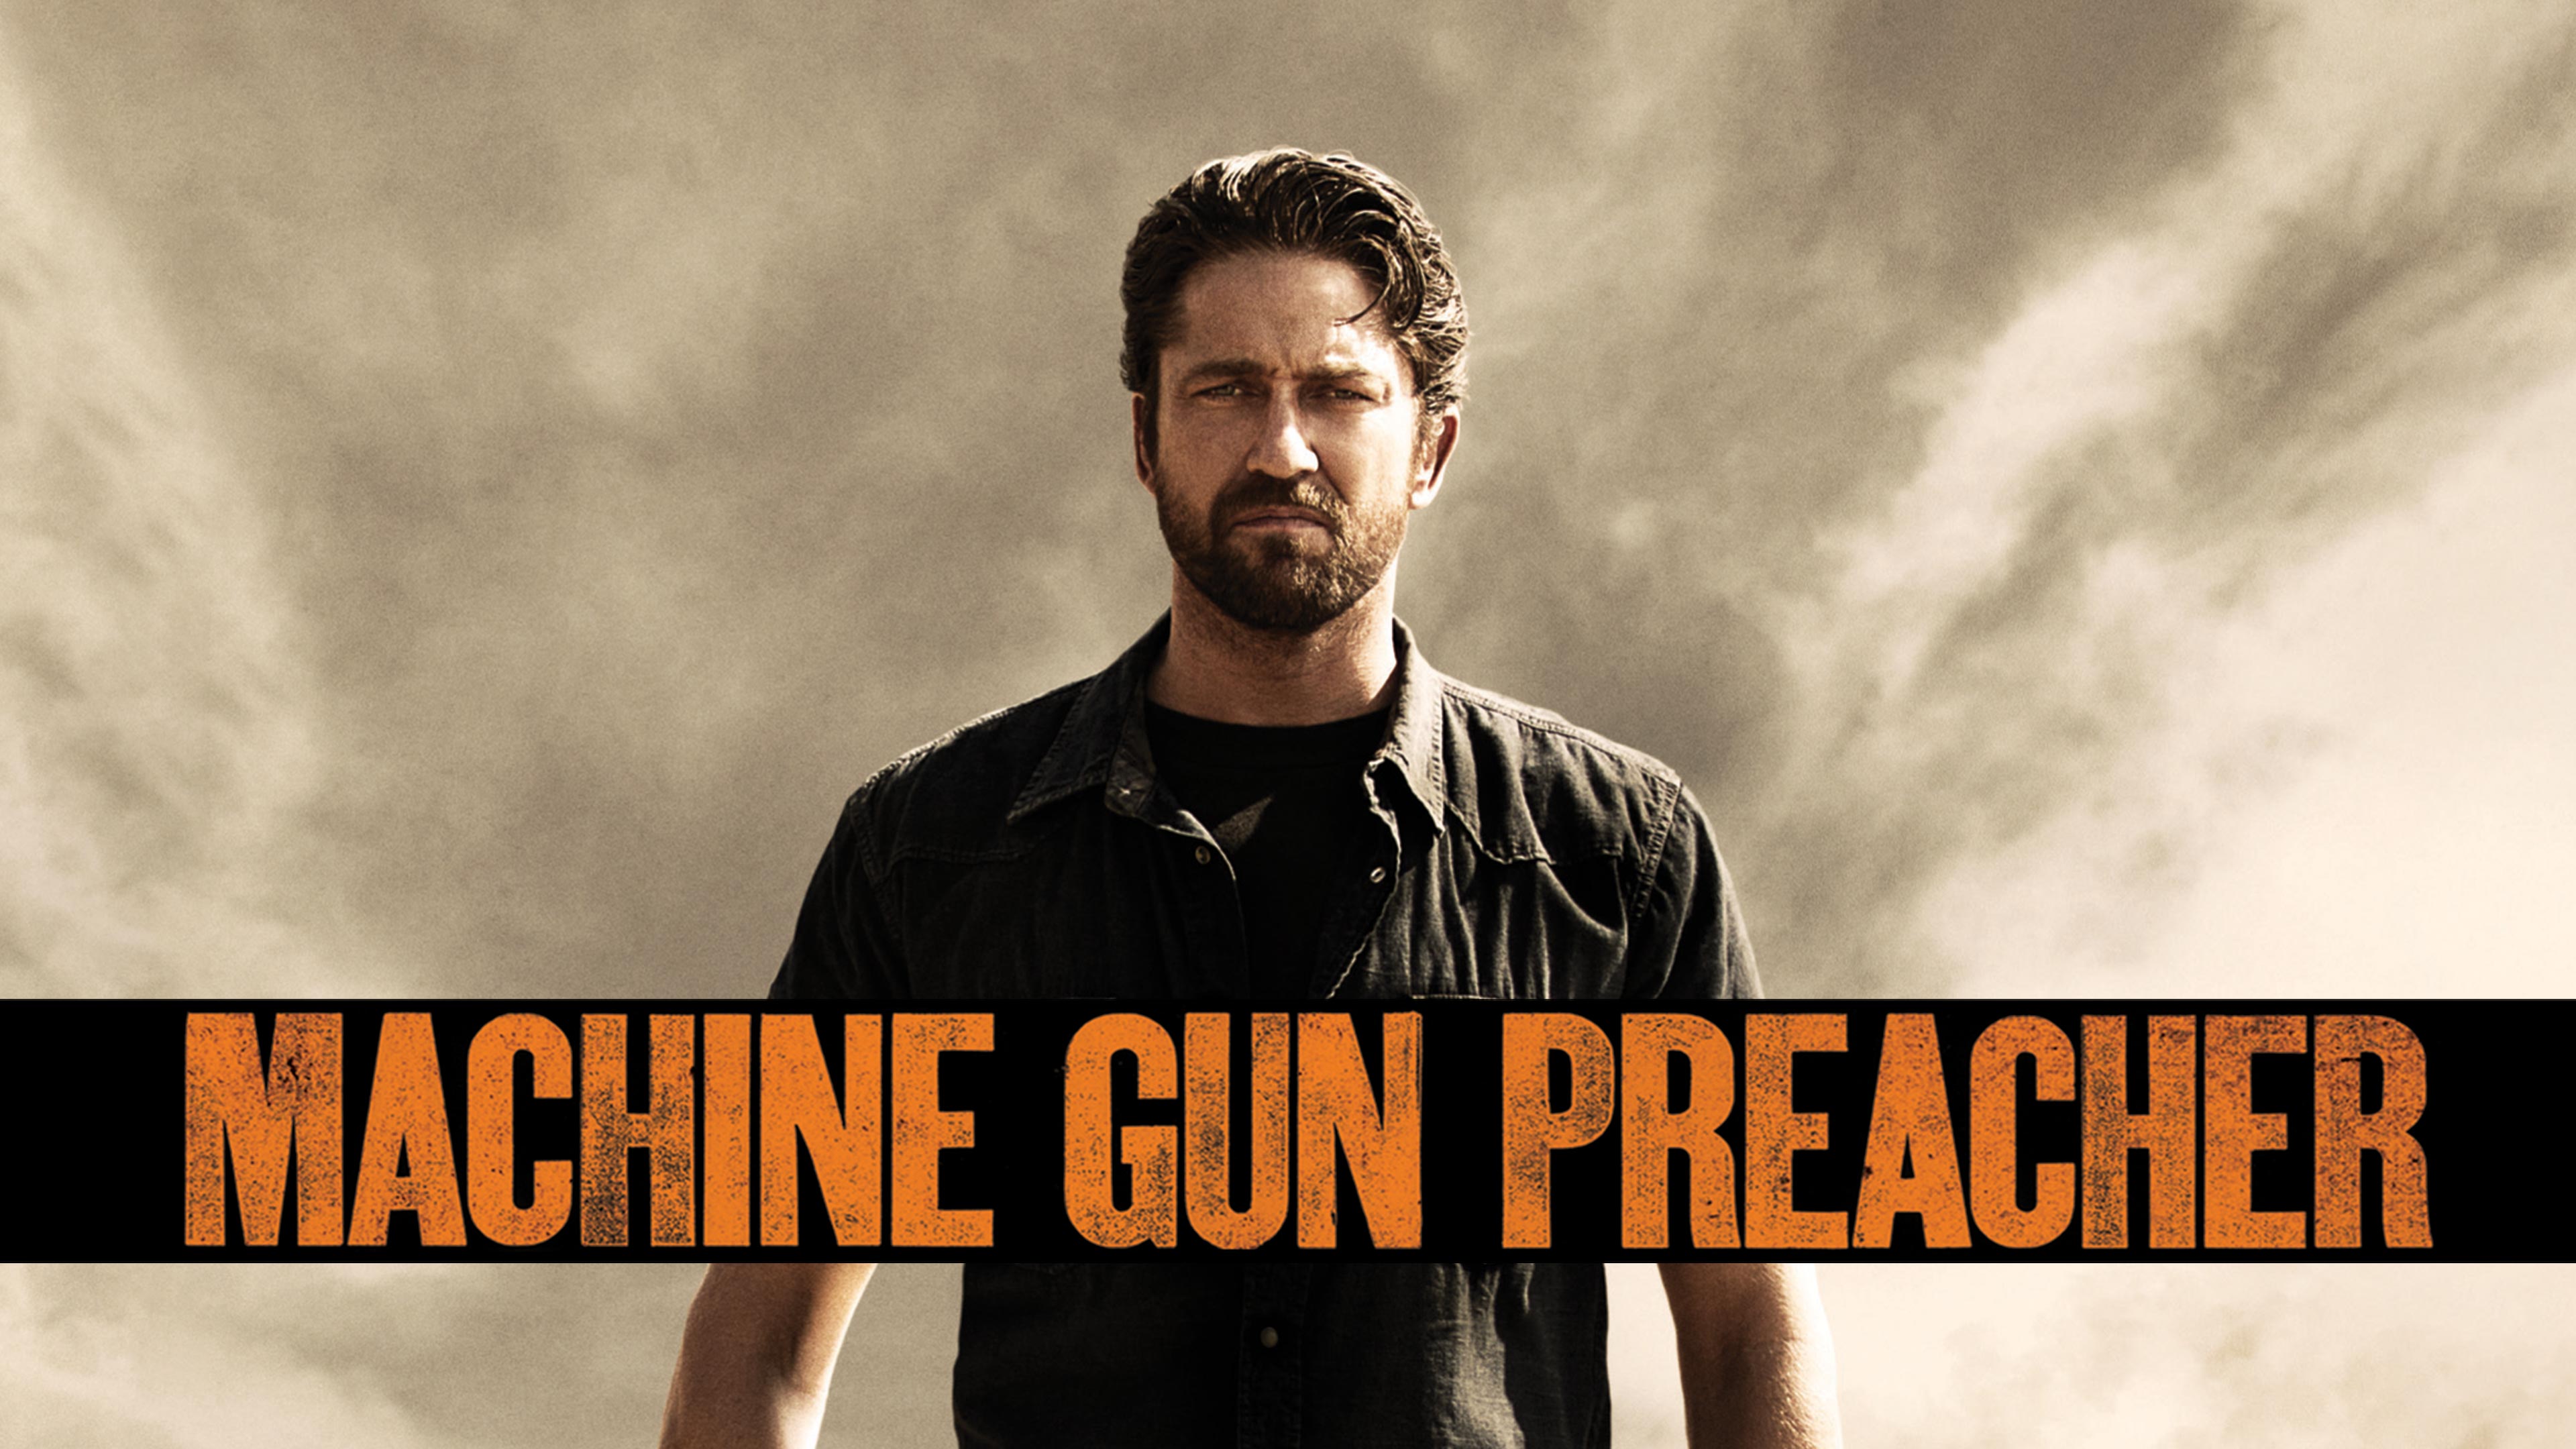 Watch Machine Gun Preacher Online | Stream Full Movies